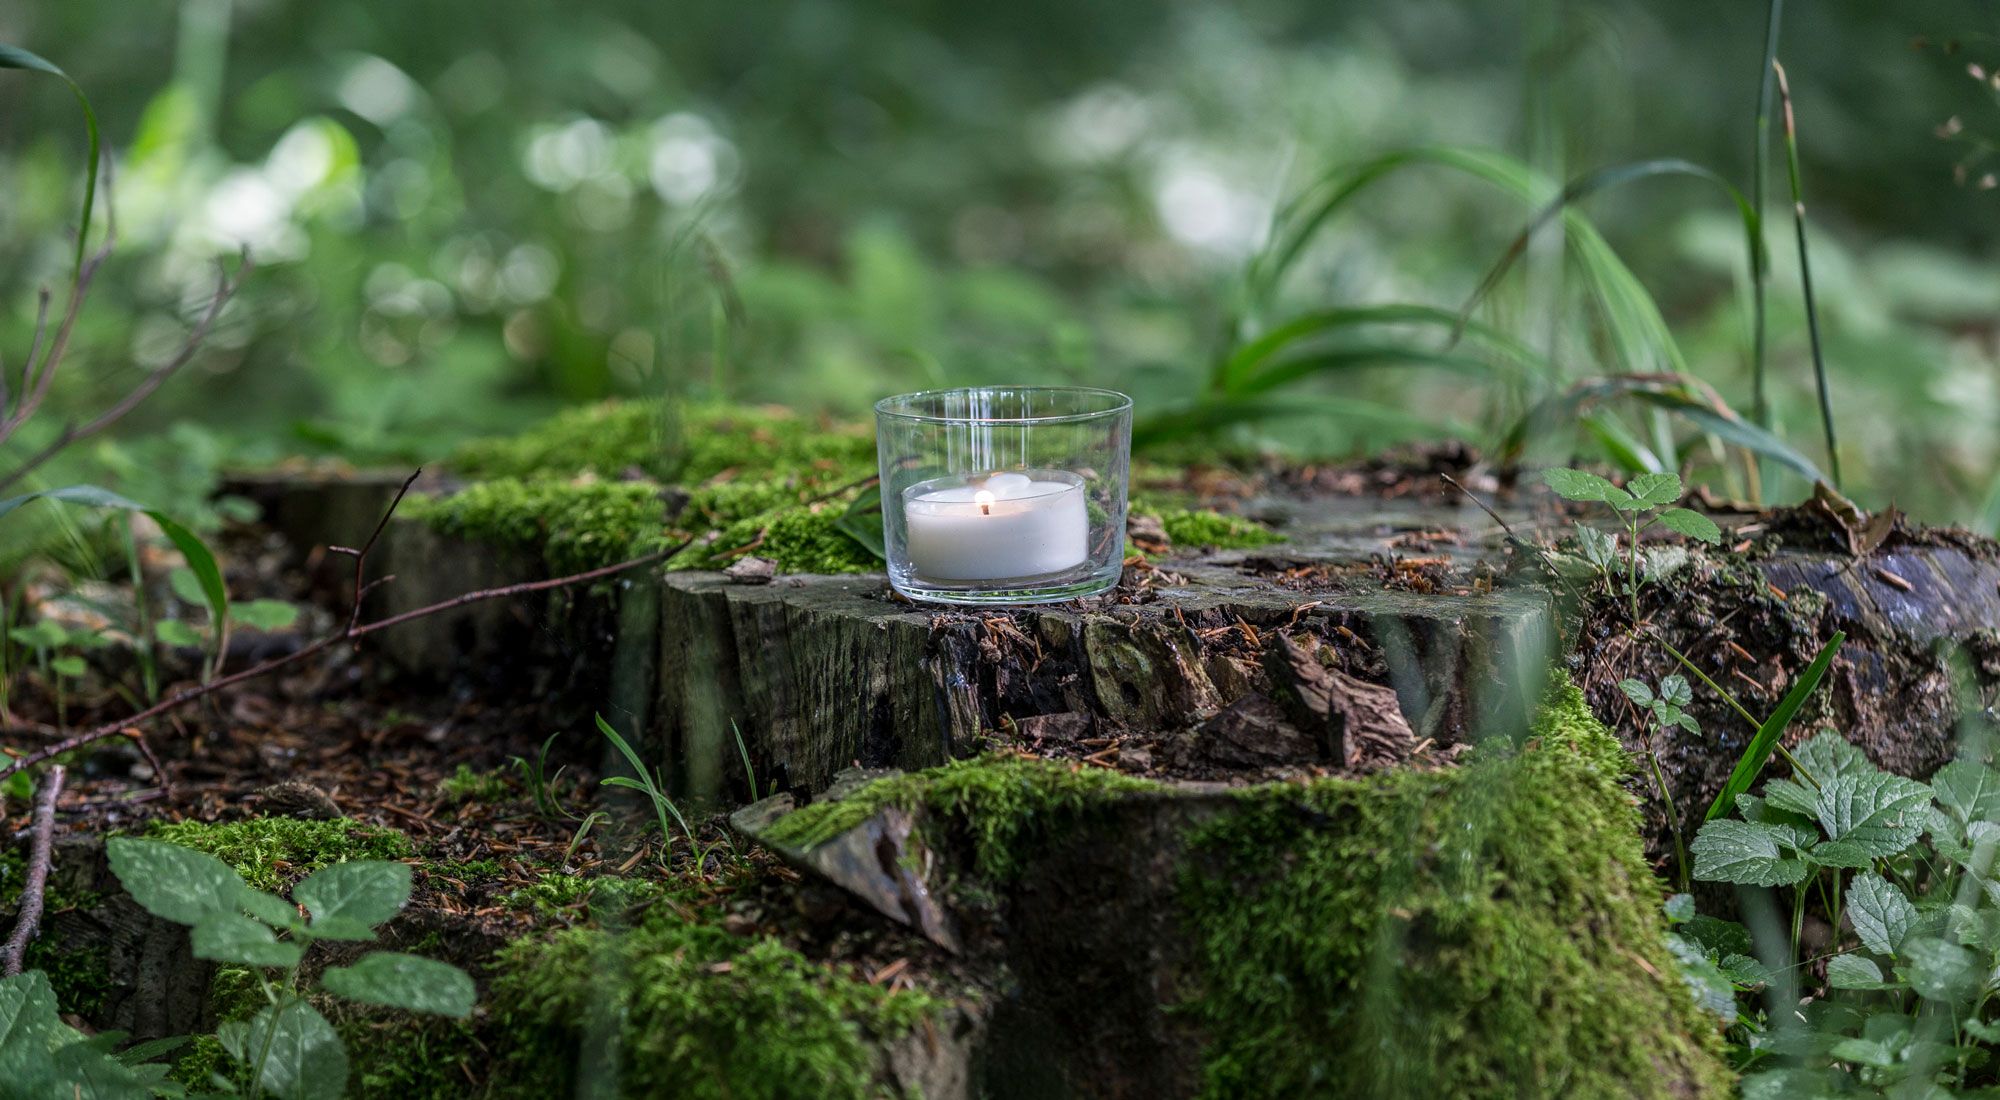 Weißes Teelicht in einem durchsichtigen Glas auf einem Baumstumpf